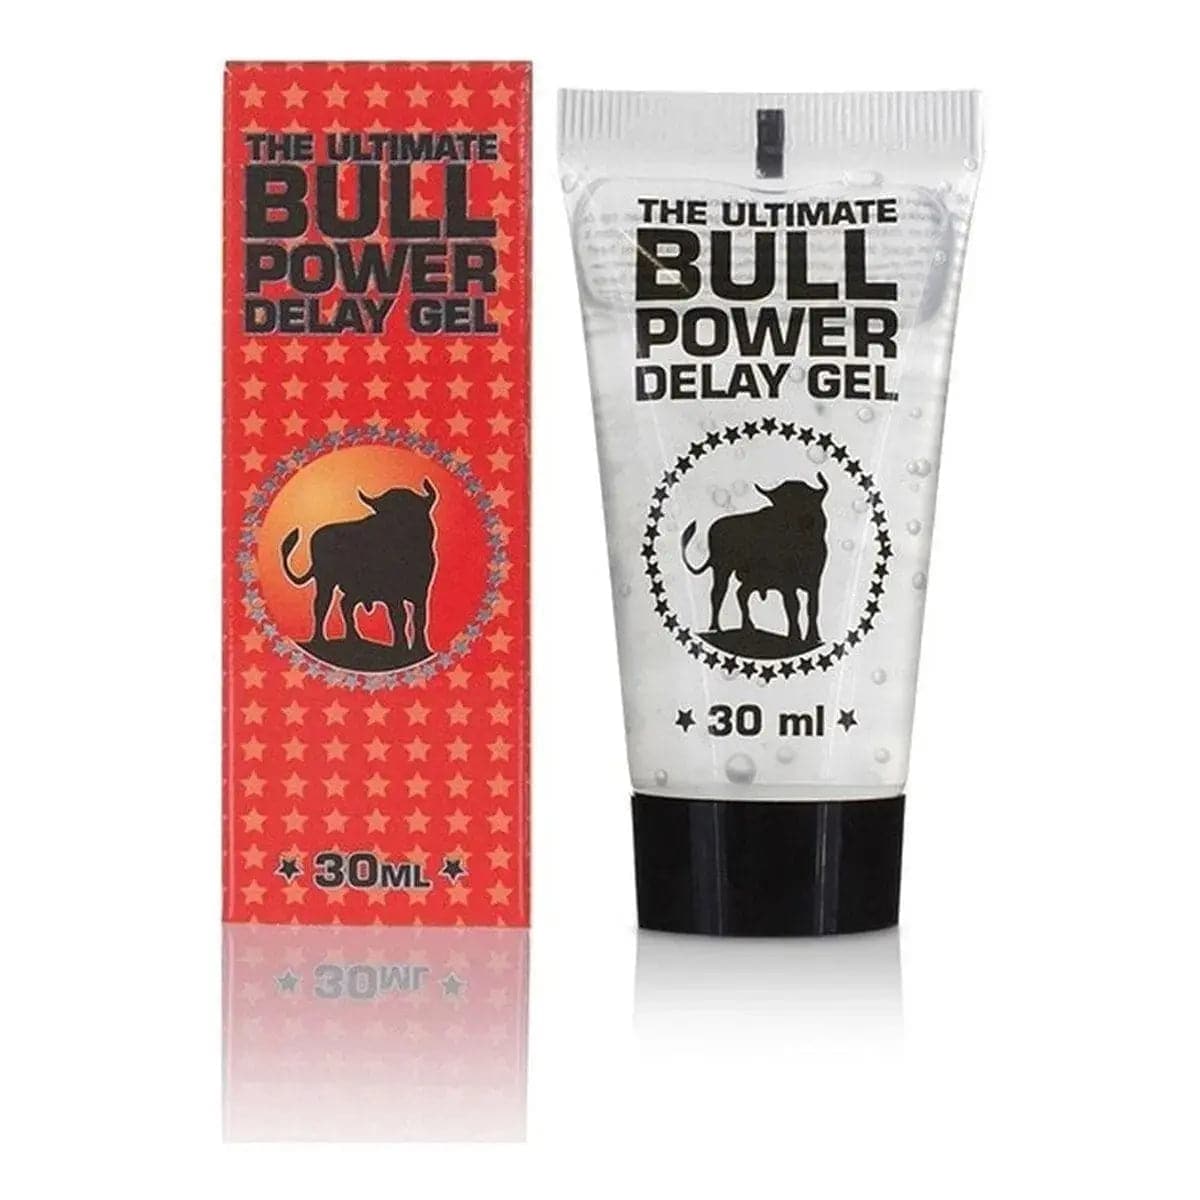 Gel Retardante Bull Power 30ml - Prevenir Ejaculação Precoce - Pérola SexShop